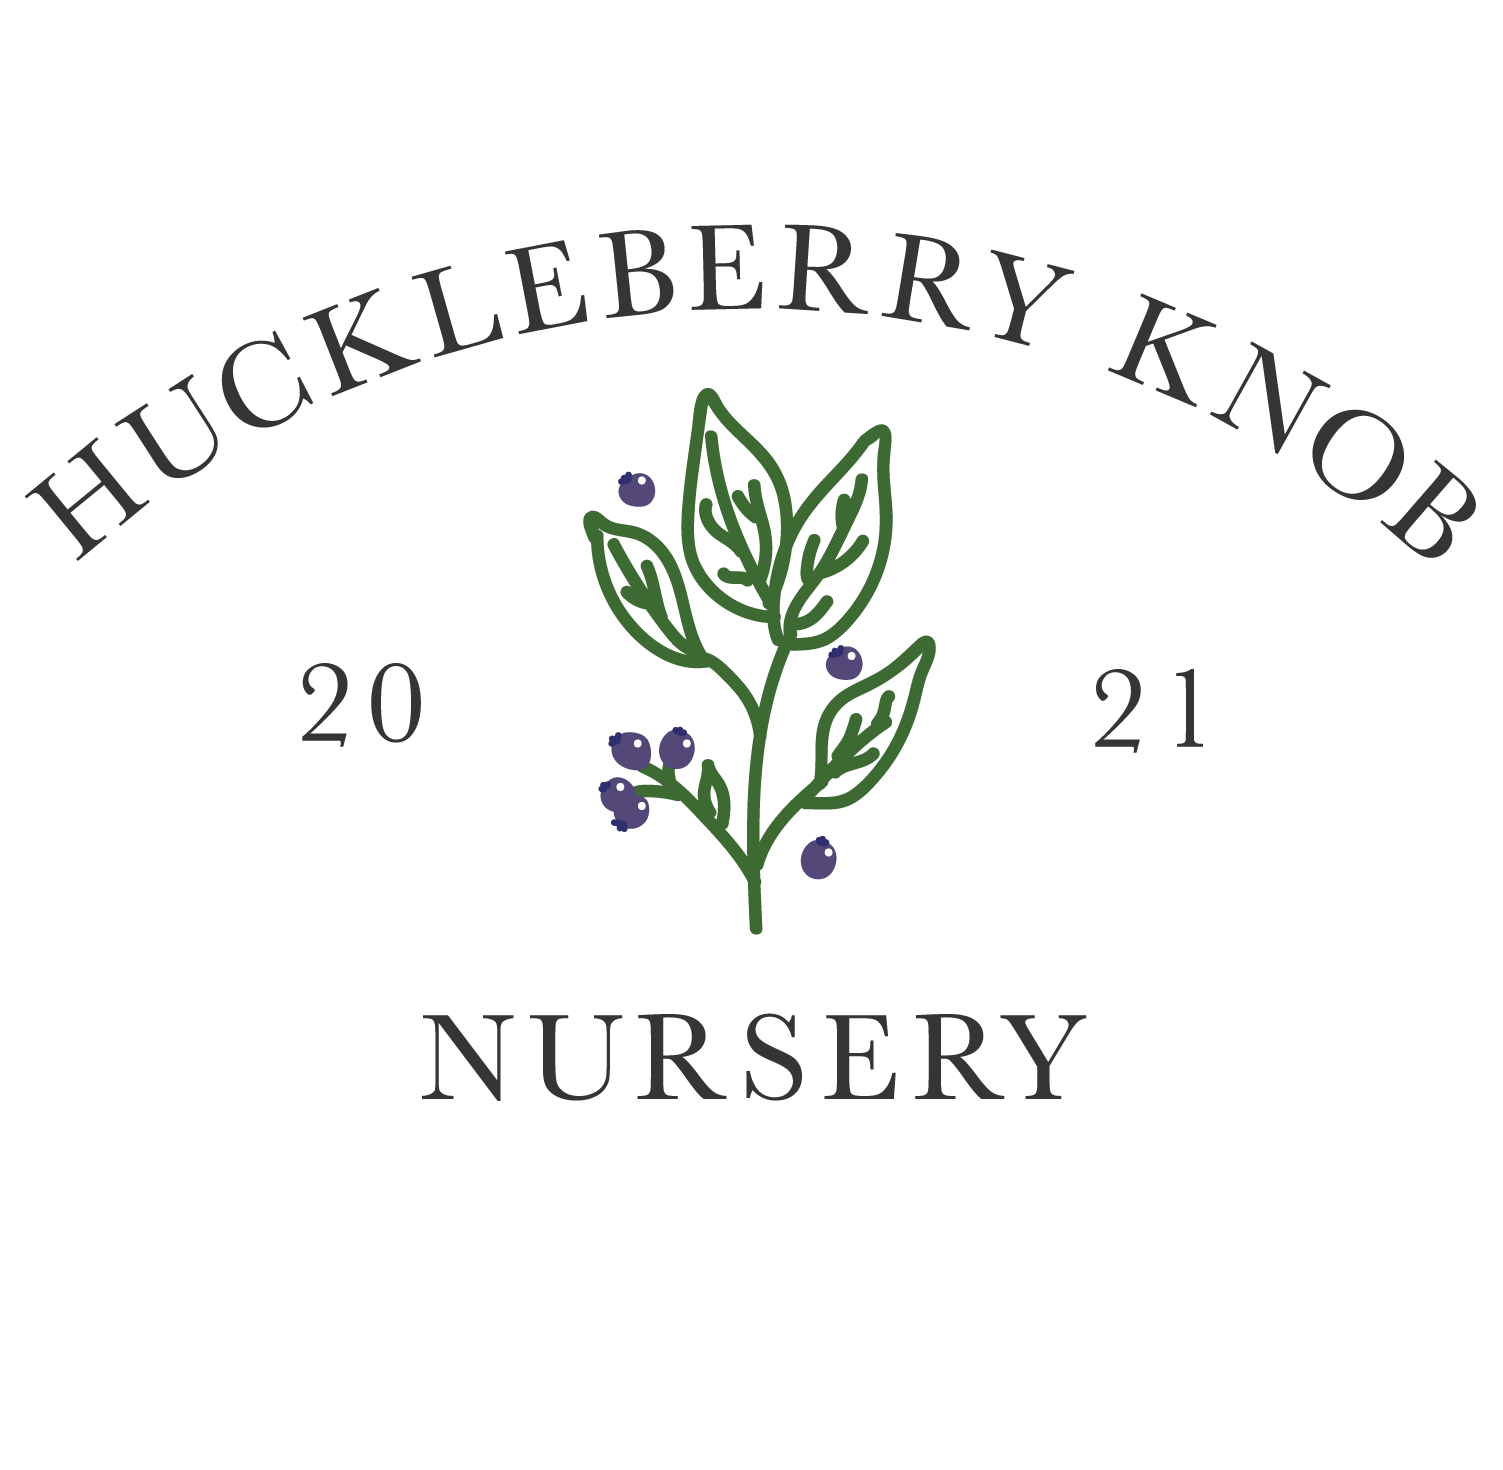 Huckleberry Knob Nursery